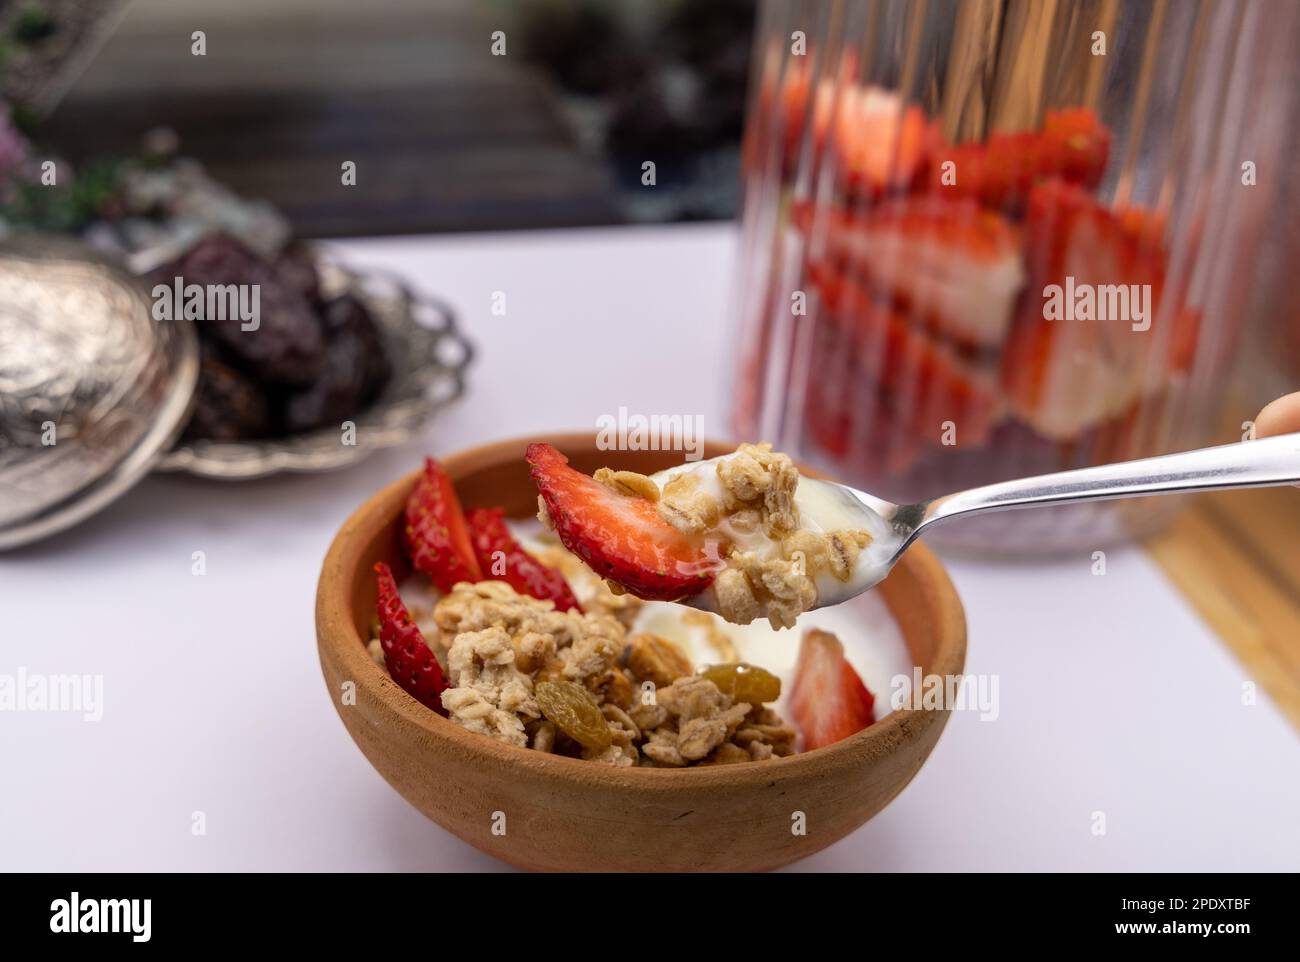 Colazione sana - cereali avena, fragola, miele con yogurt noci nel recipiente di argilla Foto Stock